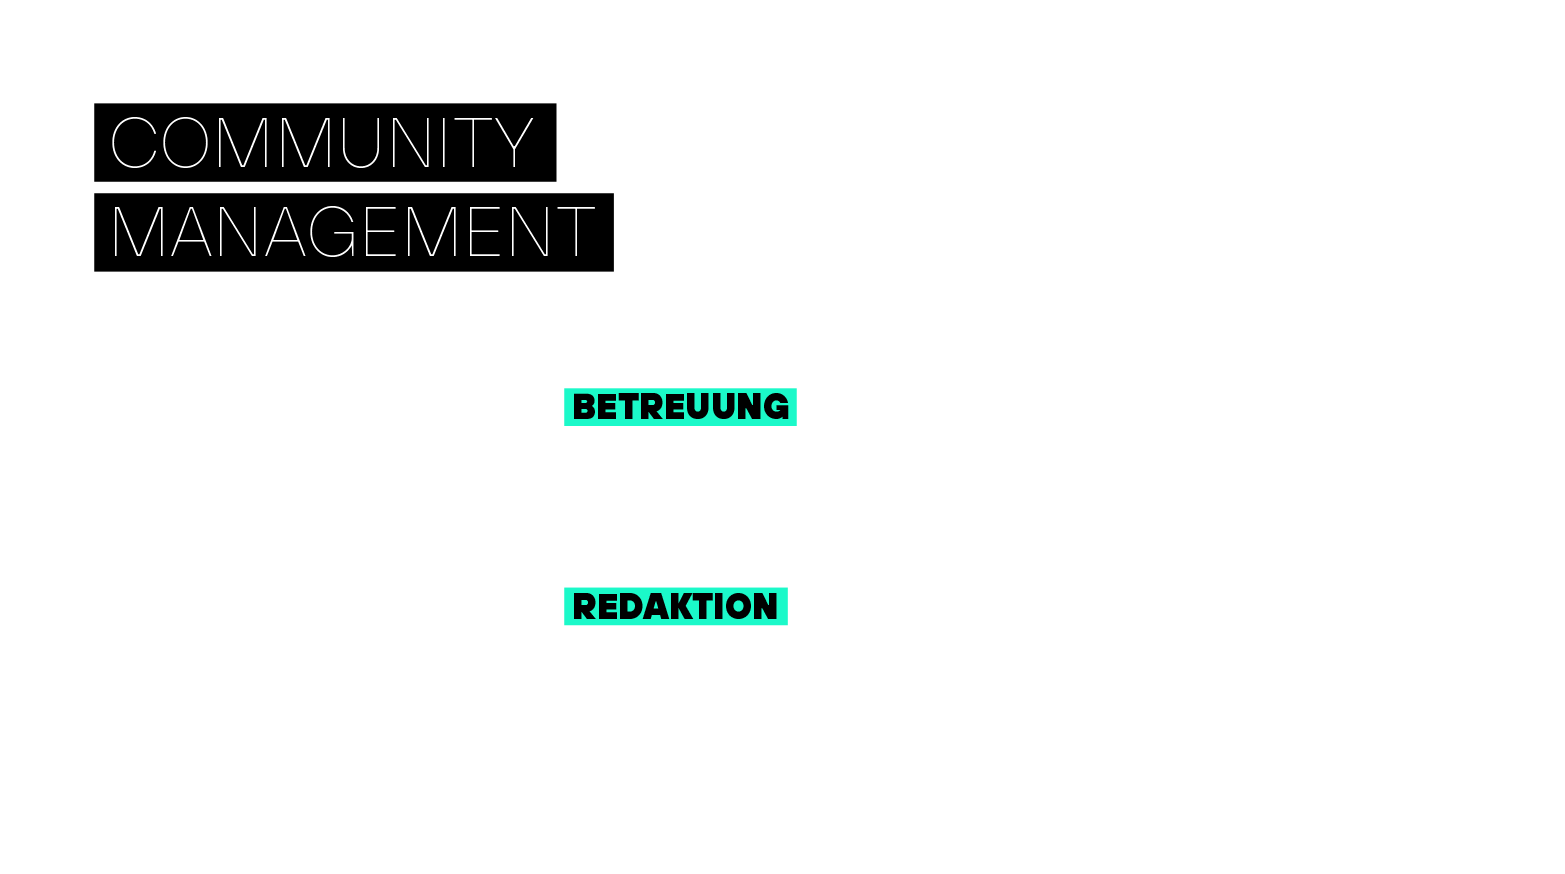 Community Management 24/7